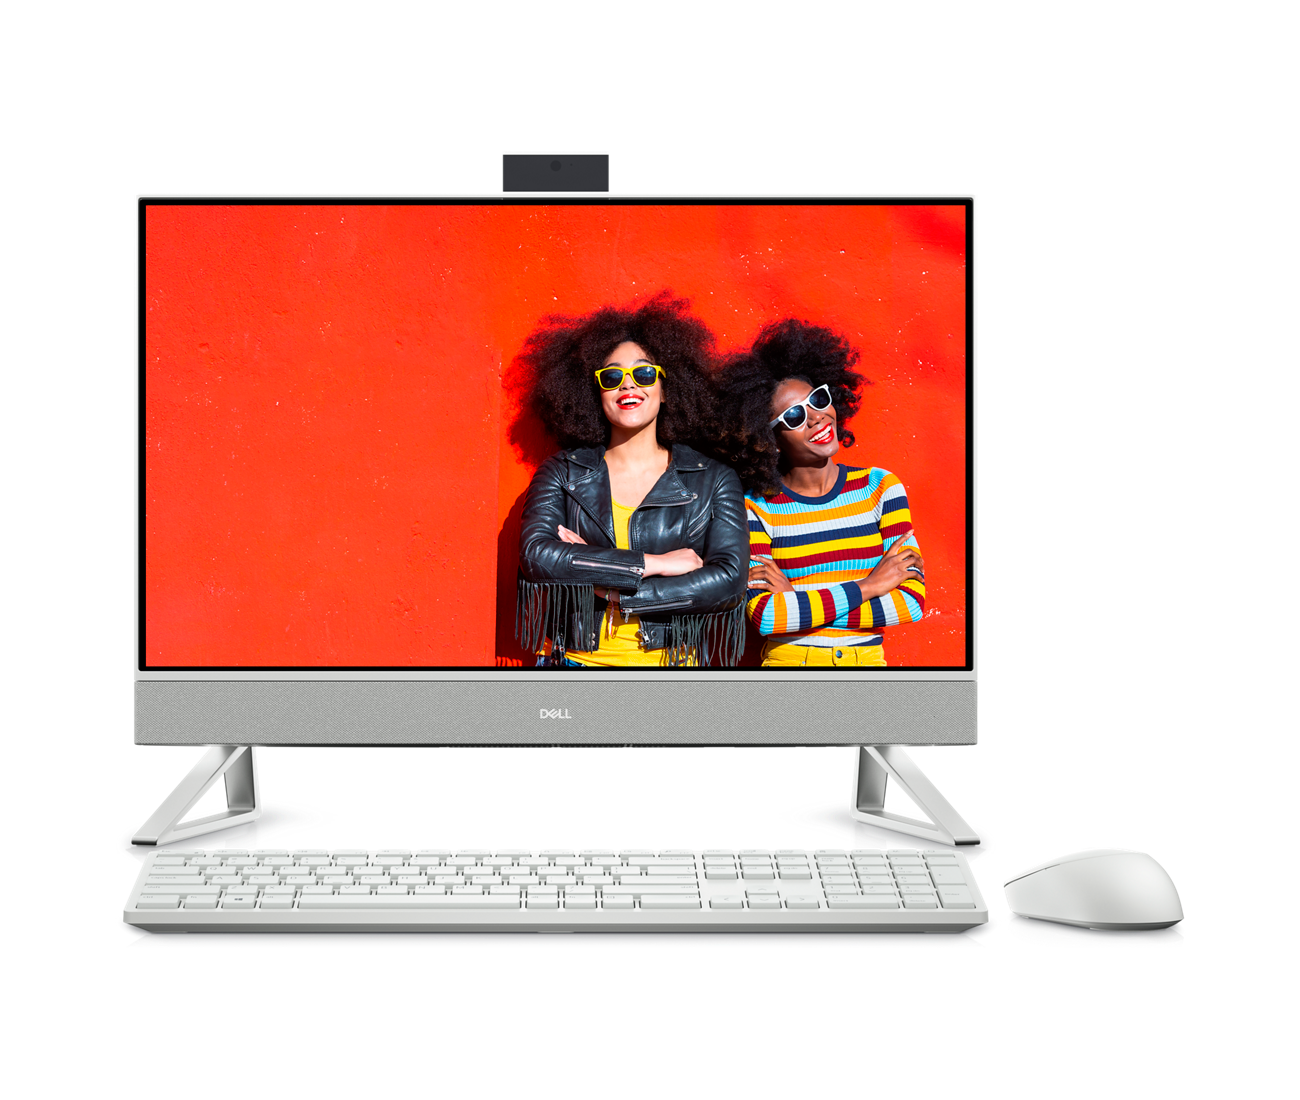 Imagen de una Dell Inspiron 24 5410 todo en uno blanca con dos mujeres usando lentes de sol en la pantalla del monitor.